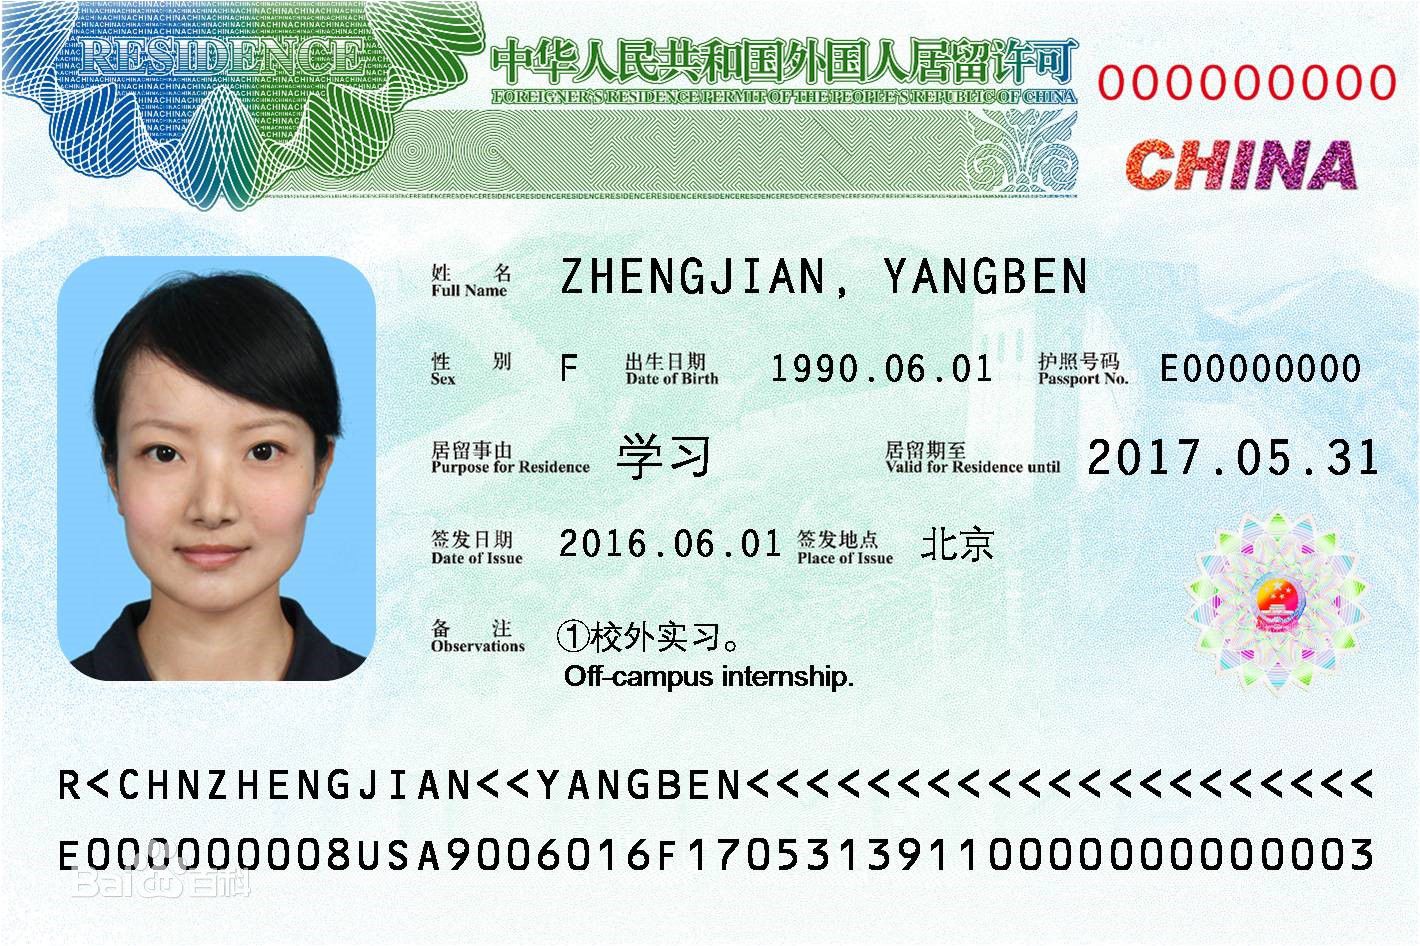 Документы для визы в китай в 2021 году